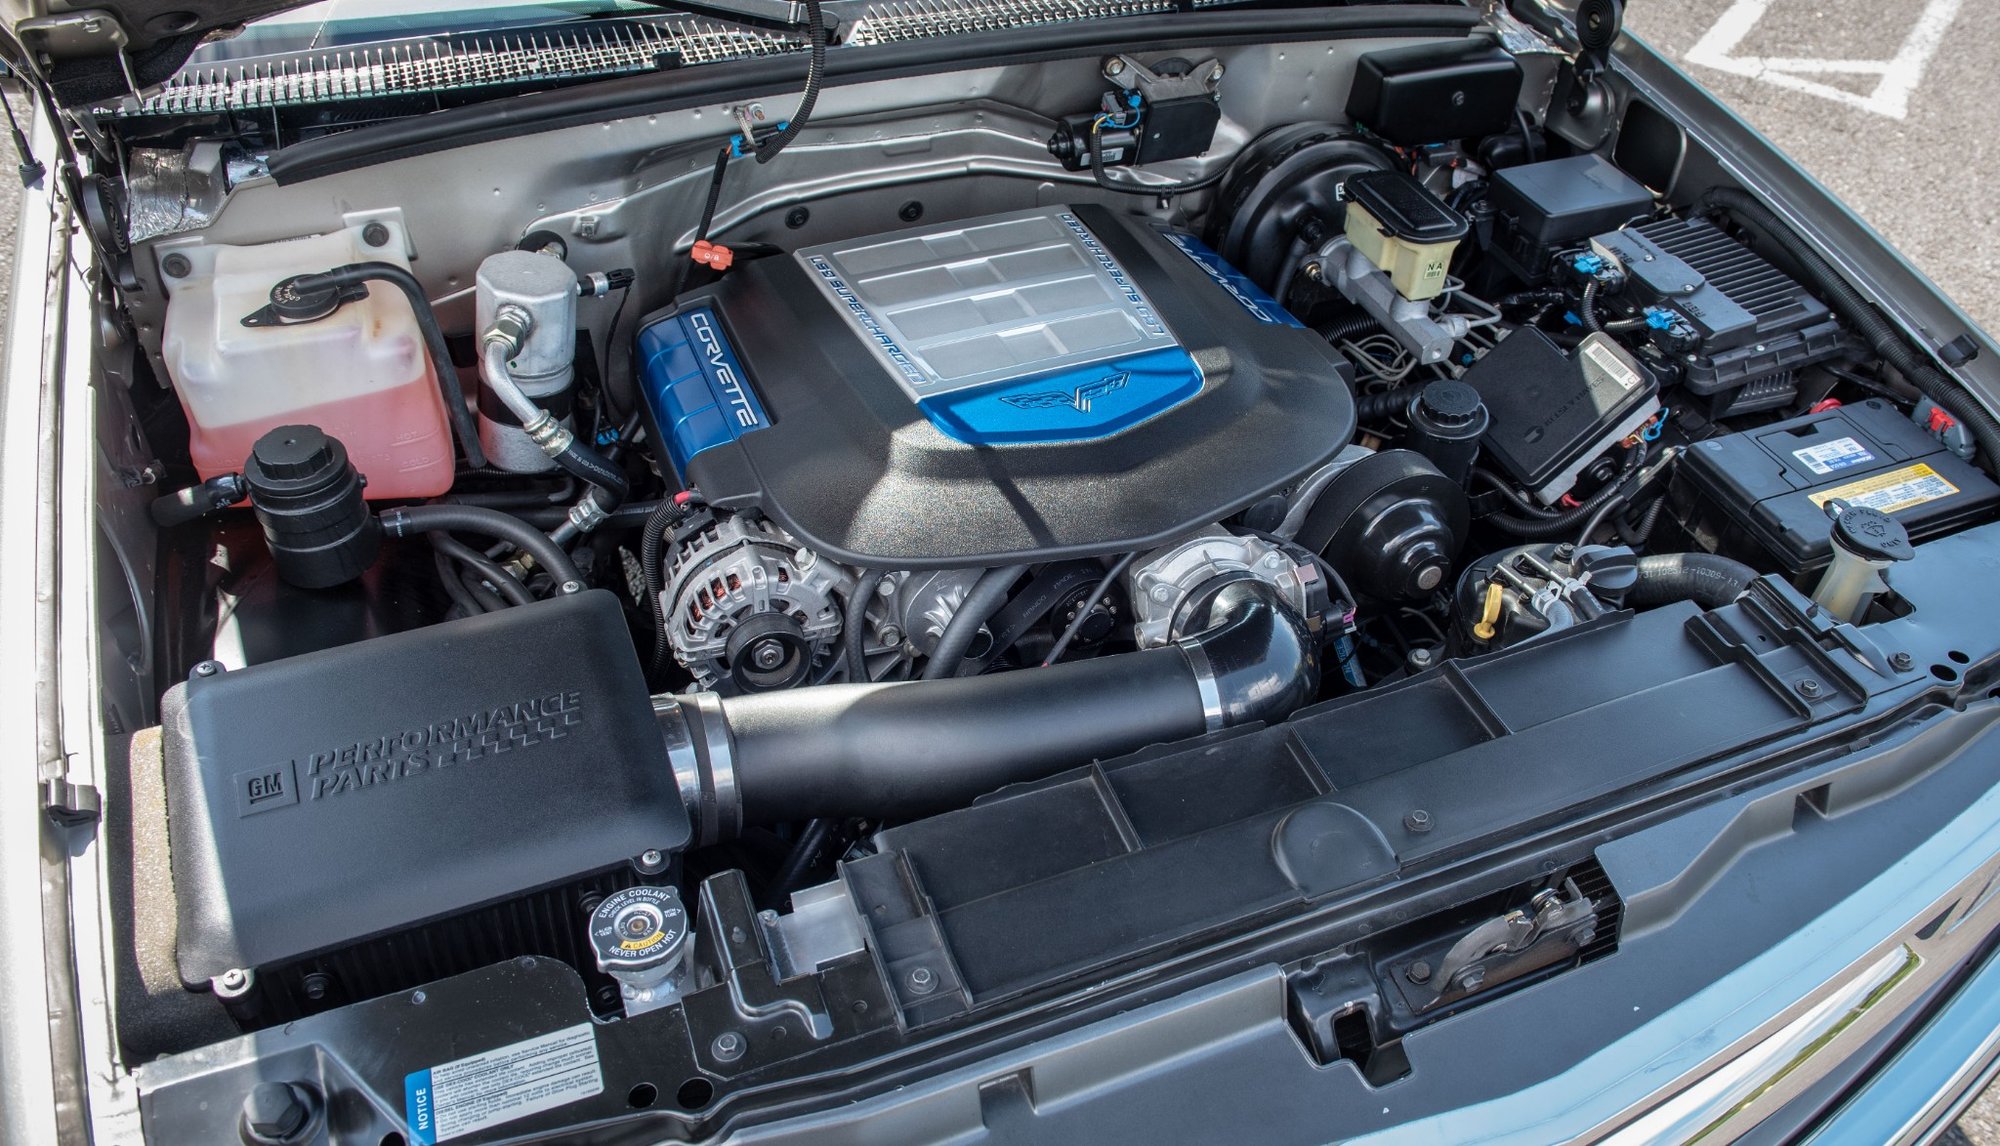 Chevrolet Tahoe s osmiválcem LS9 je dokonale nenápadným SUV s monstrózním výkonem